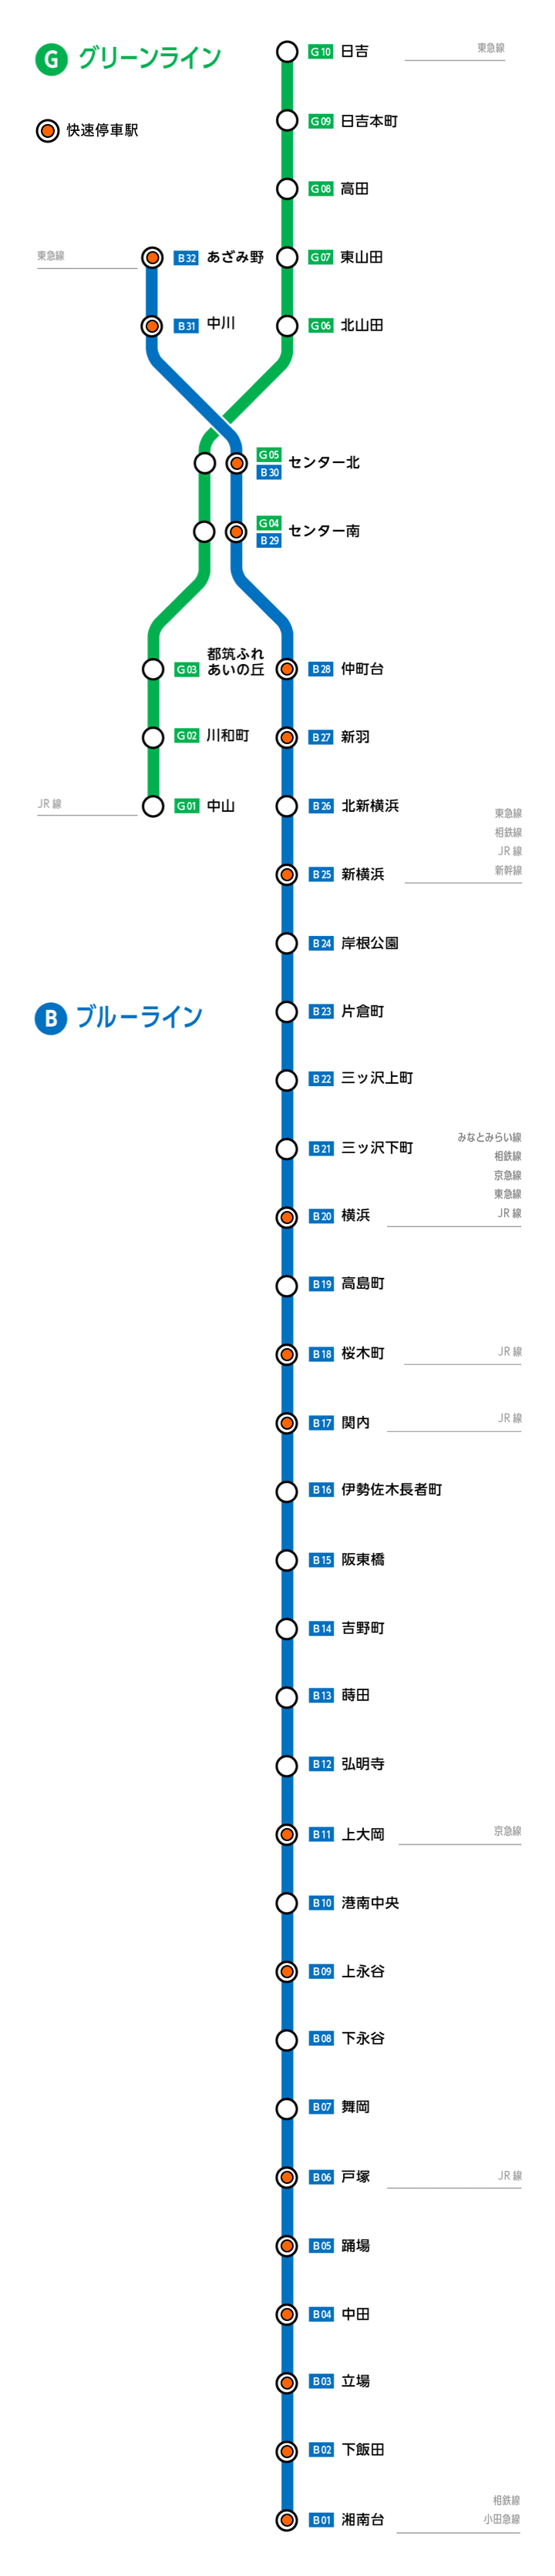 乗換 時刻表検索 横浜市交通局